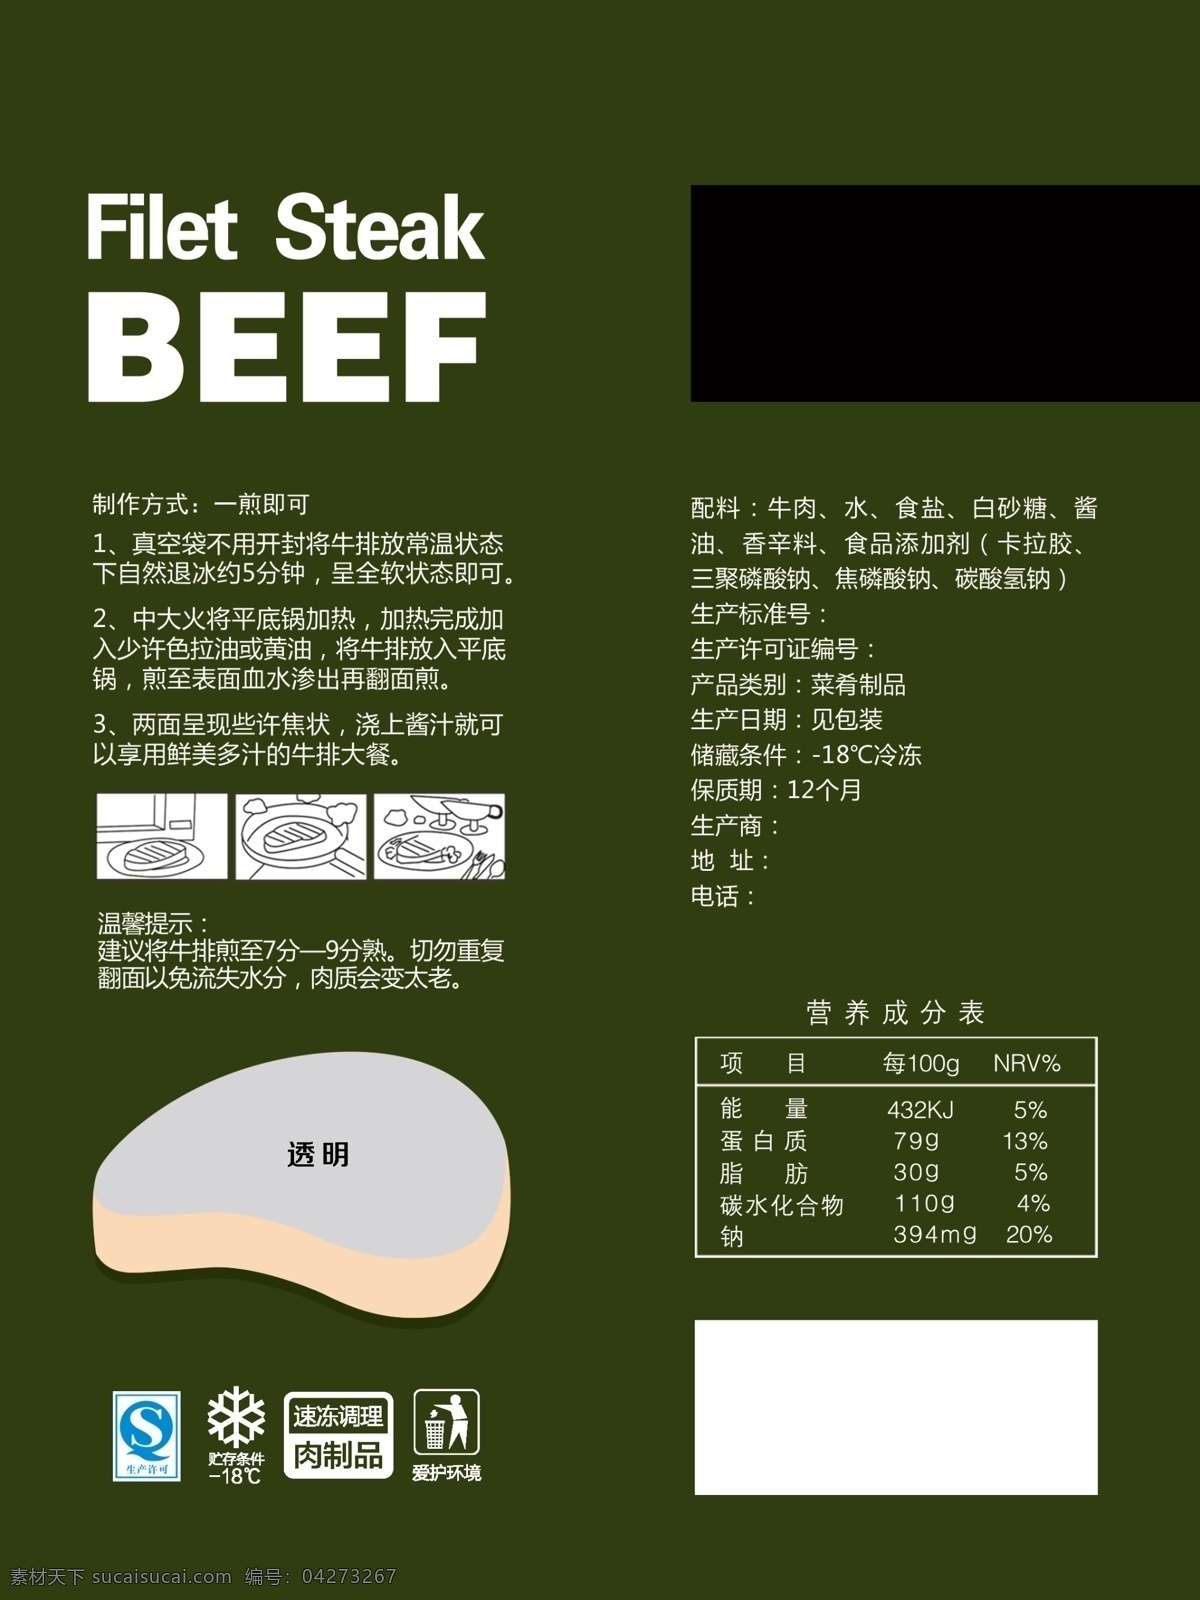 牛排包装 牛排烹饪 牛排 营养 成分表